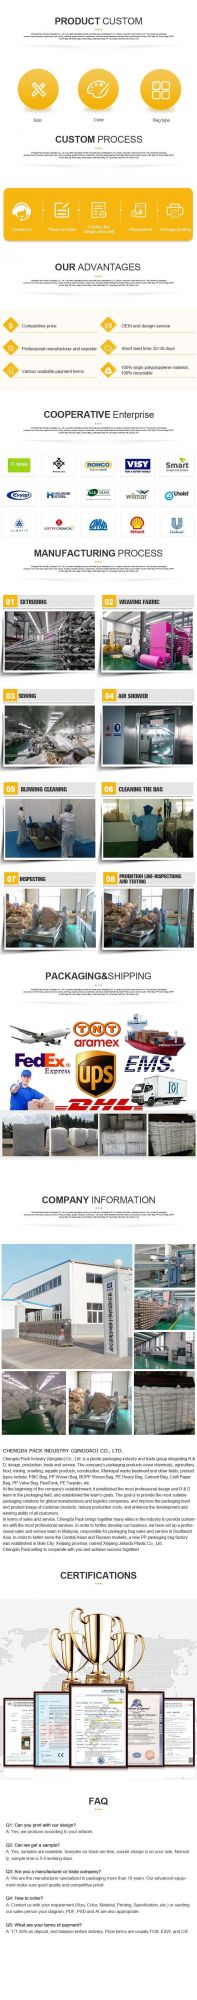 Super Sack Suppliers 1 Ton Big Bag Manufacturer PP Jumbo Industrial Big Bag